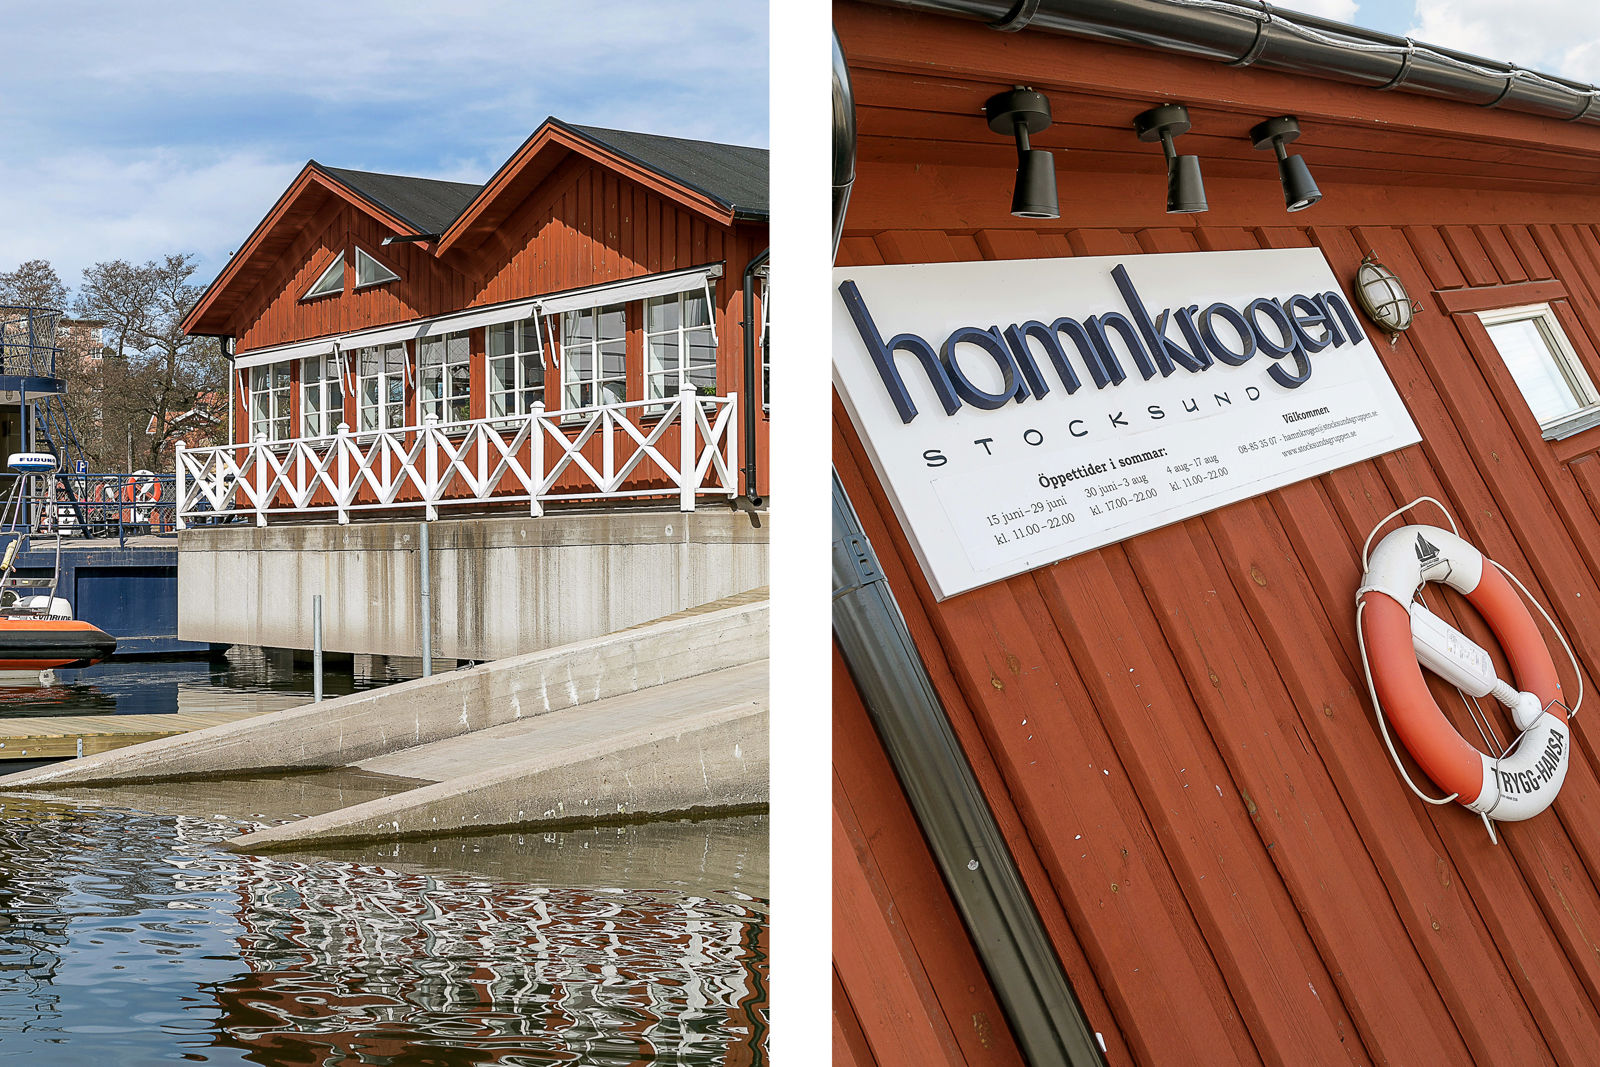 Hamnkrog,Stocksund